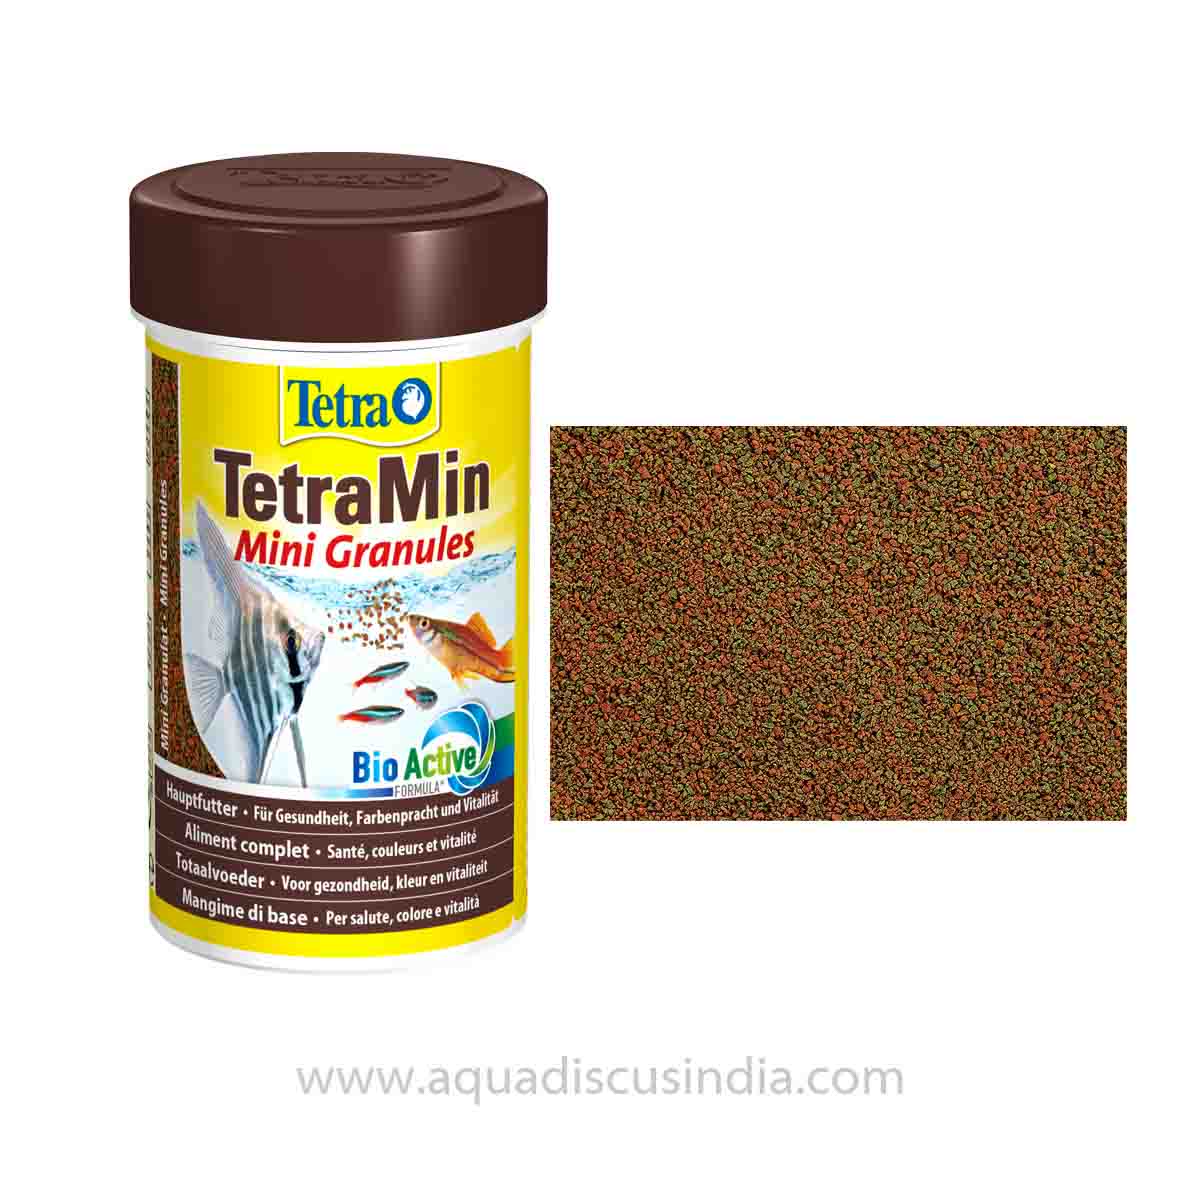 TetraMin Mini Granules - BioActive formula & Prebiotics